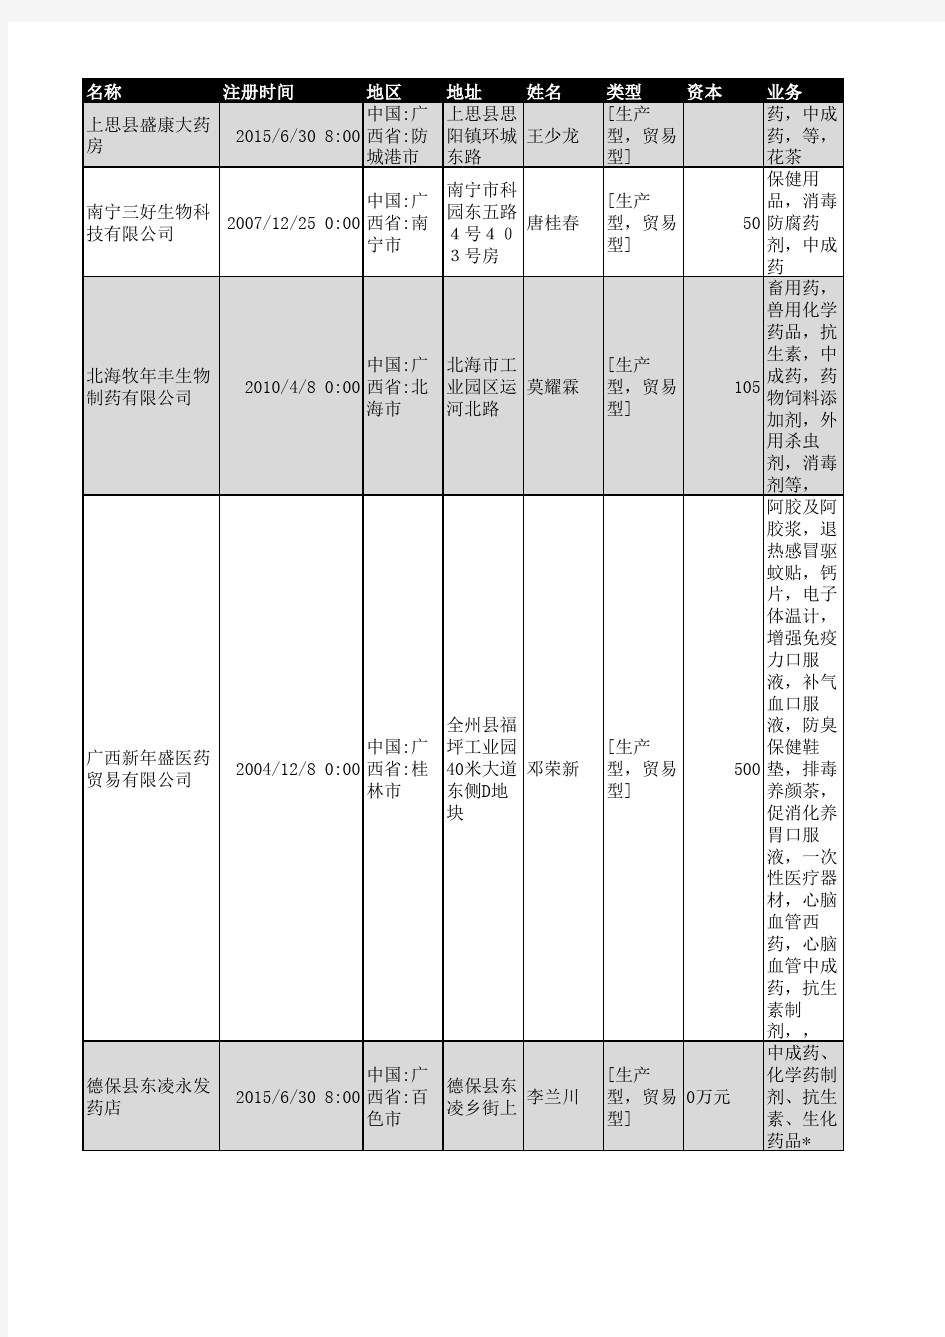 2018年广西省中成药企业名录76家